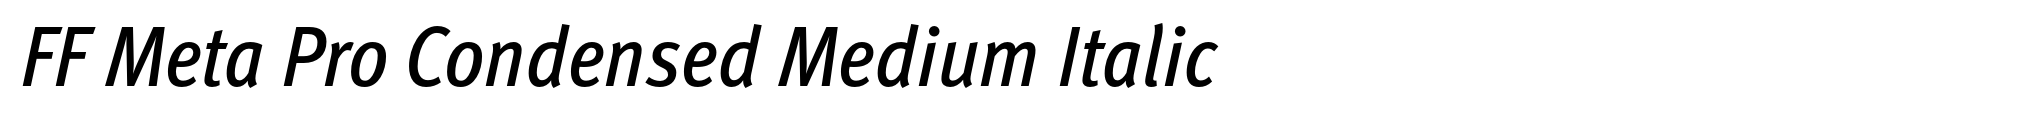 FF Meta Pro Condensed Medium Italic image